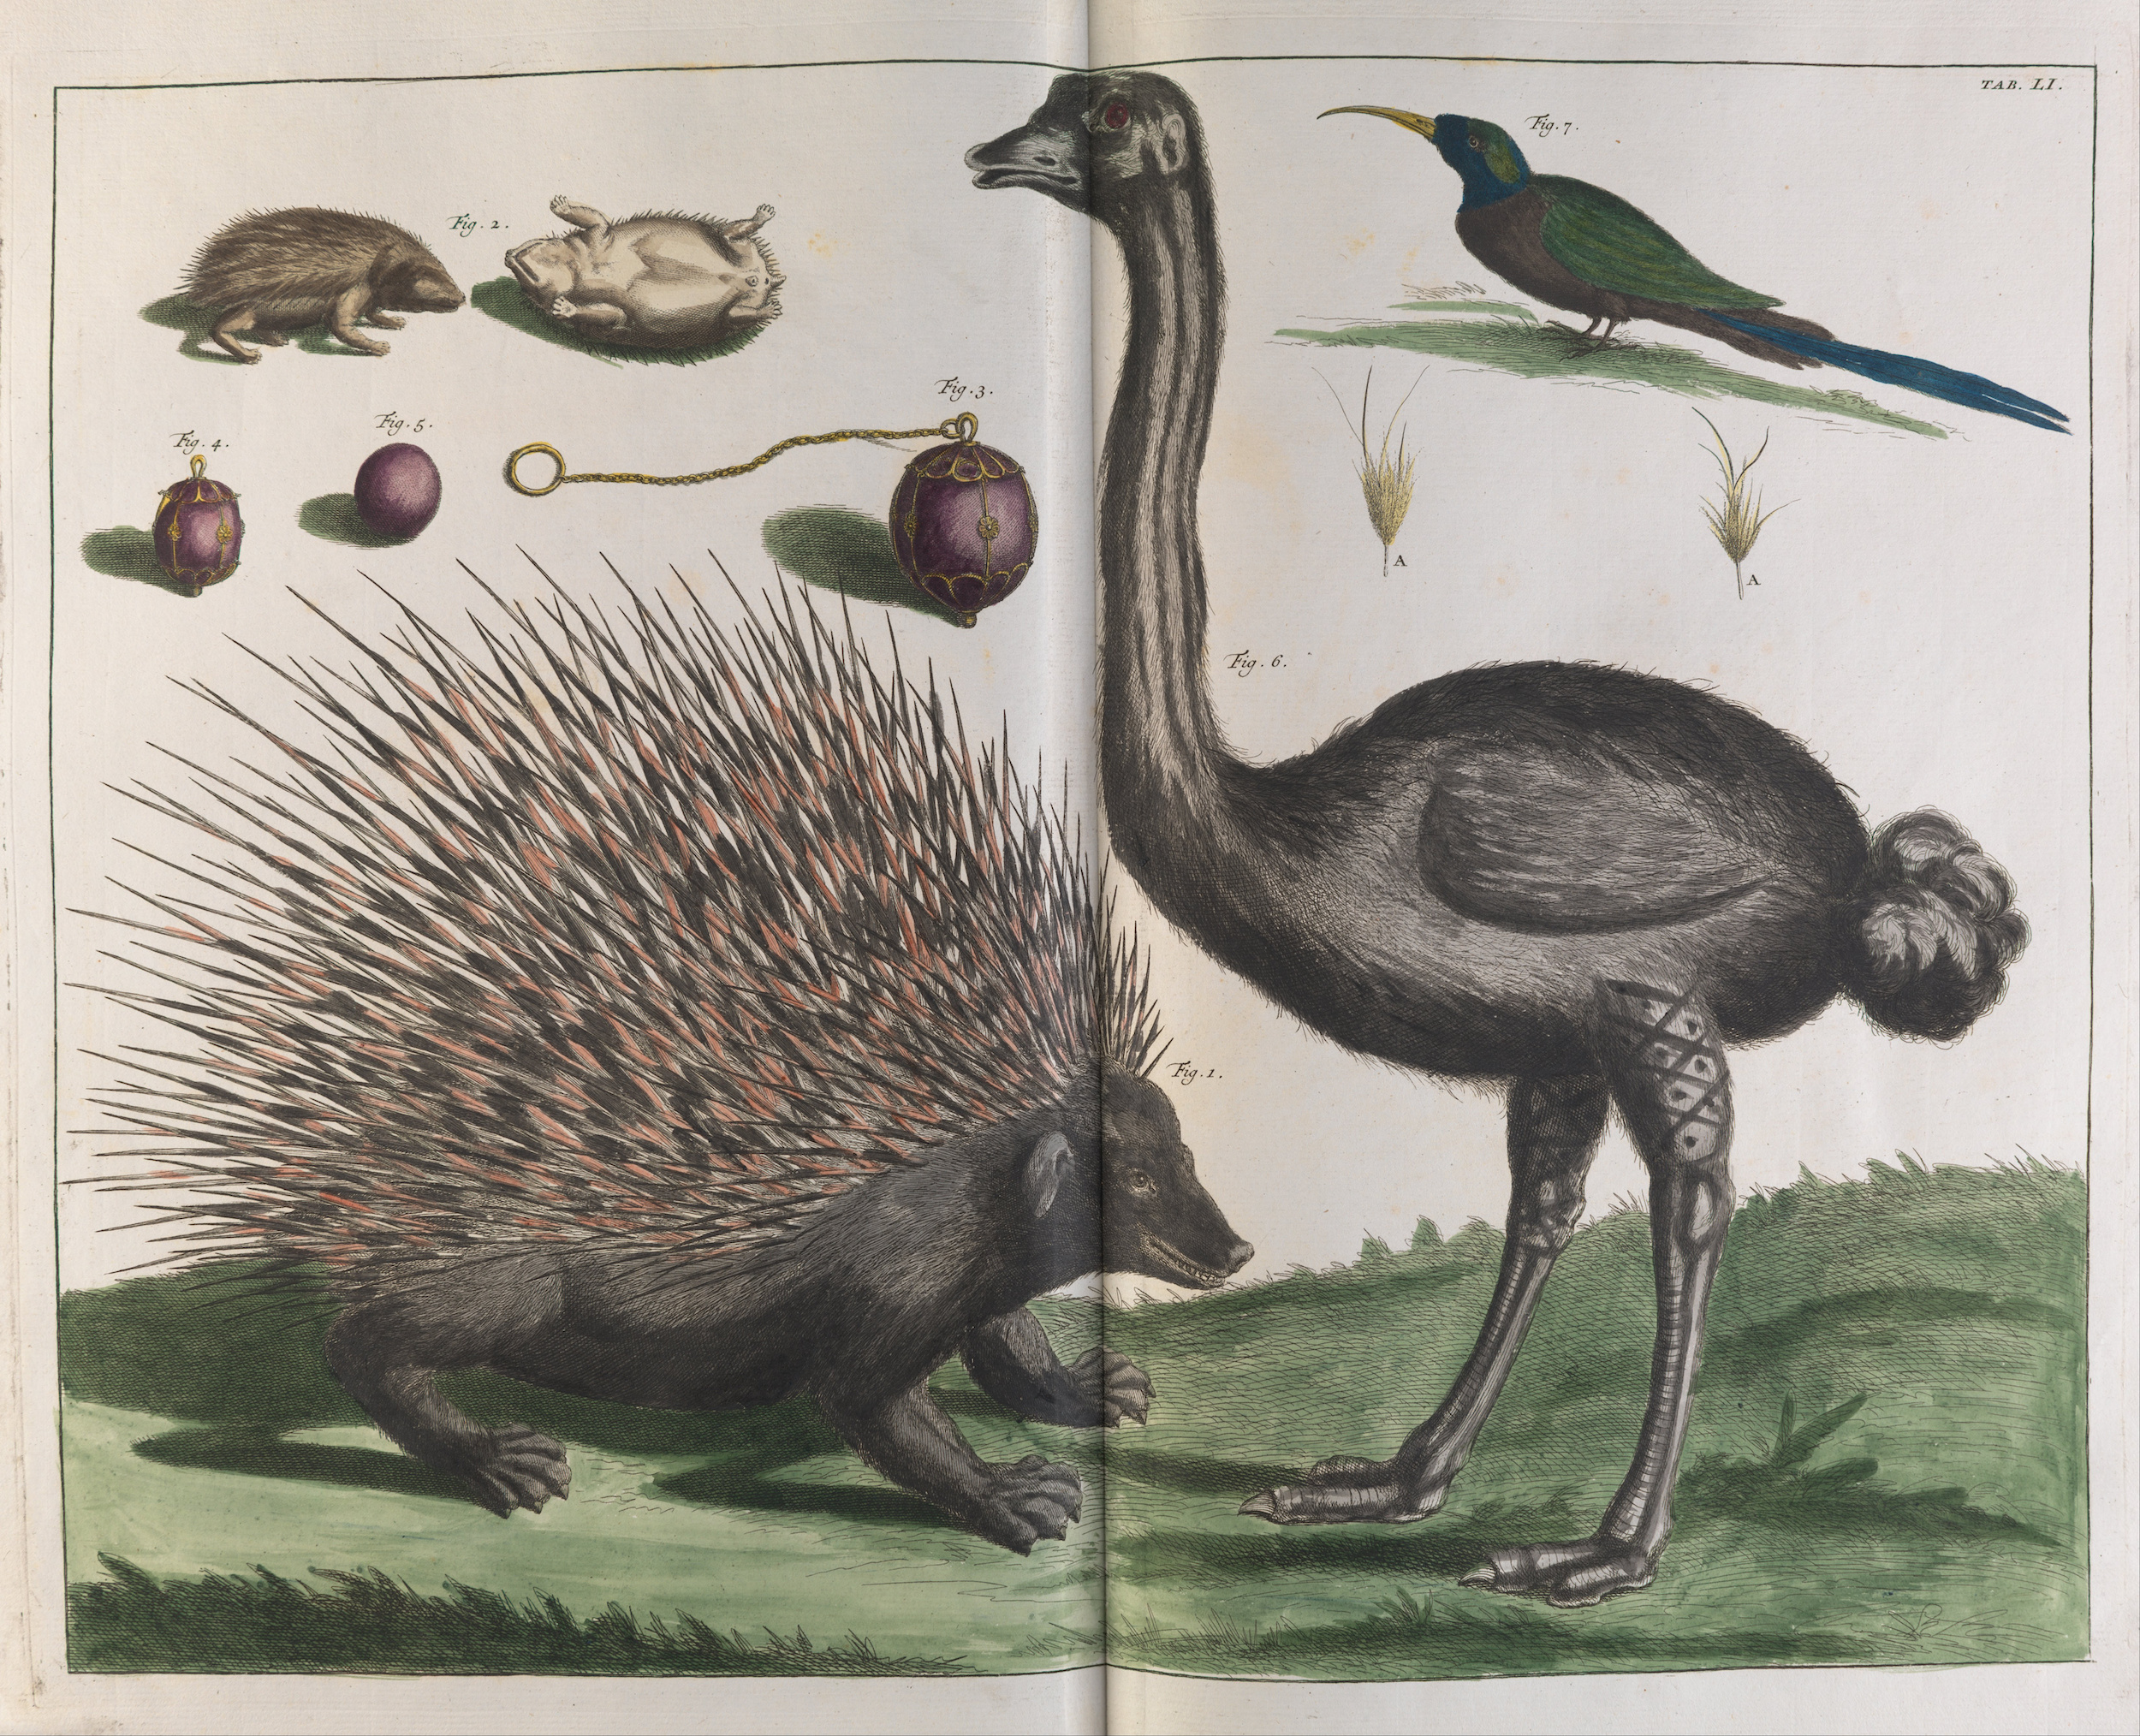 马六甲刺猬，马六甲，鸵鸟，金丝雀 by 阿尔伯特斯 塞巴 - 1734 - 670 x 530 毫米 